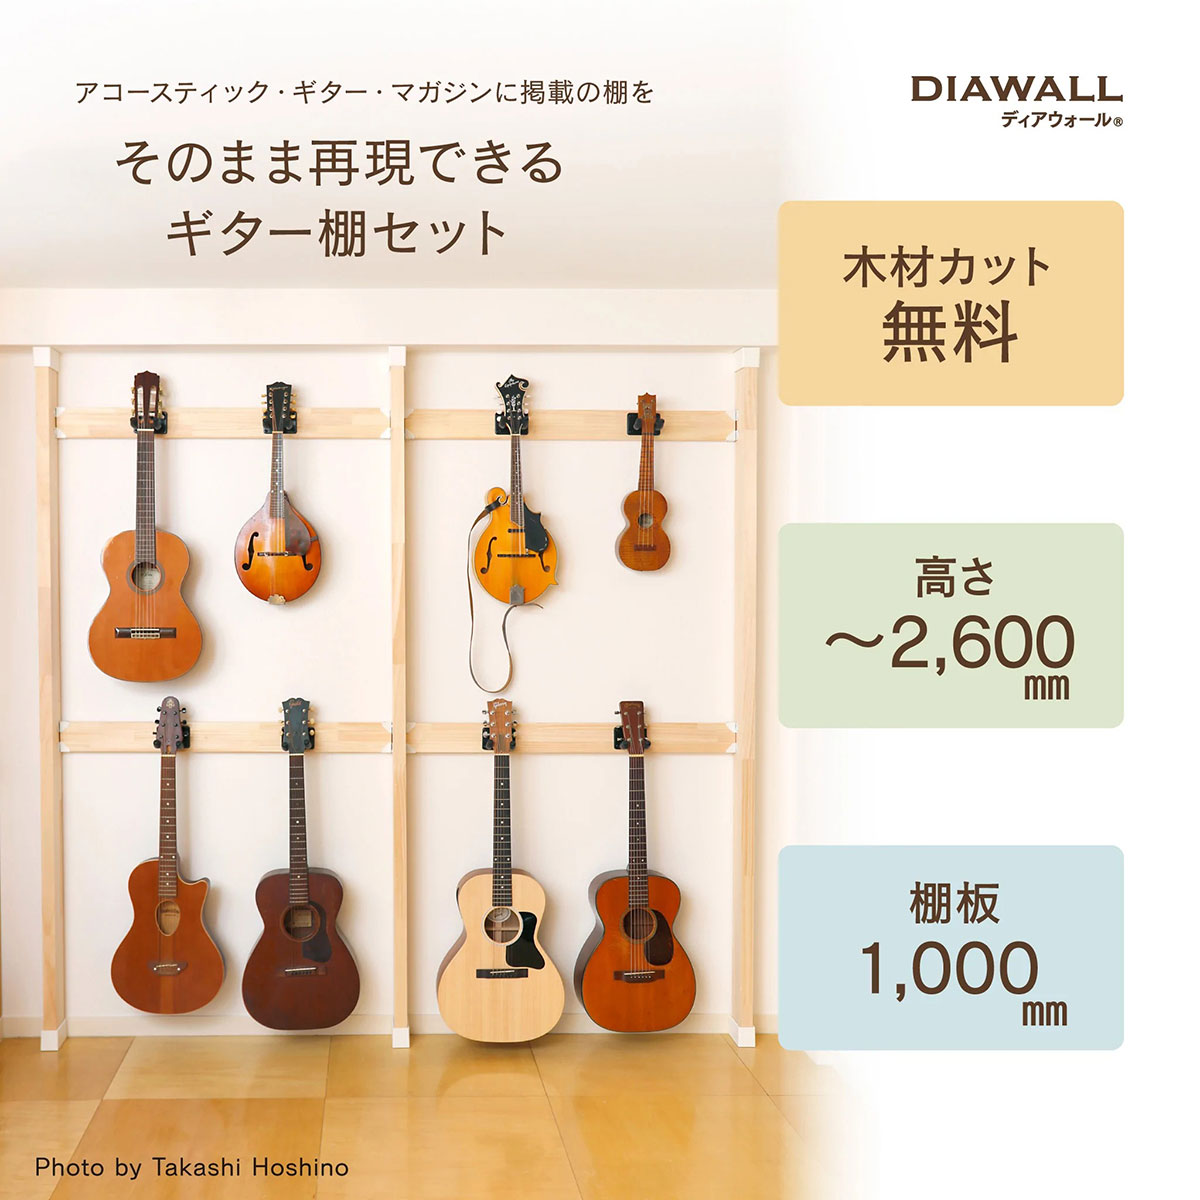 【送料込】KIKUTANI DIAWALL 3本柱 ギター棚セット / ギター8本用 ギターハンガー ギターラック【代金引換不可】